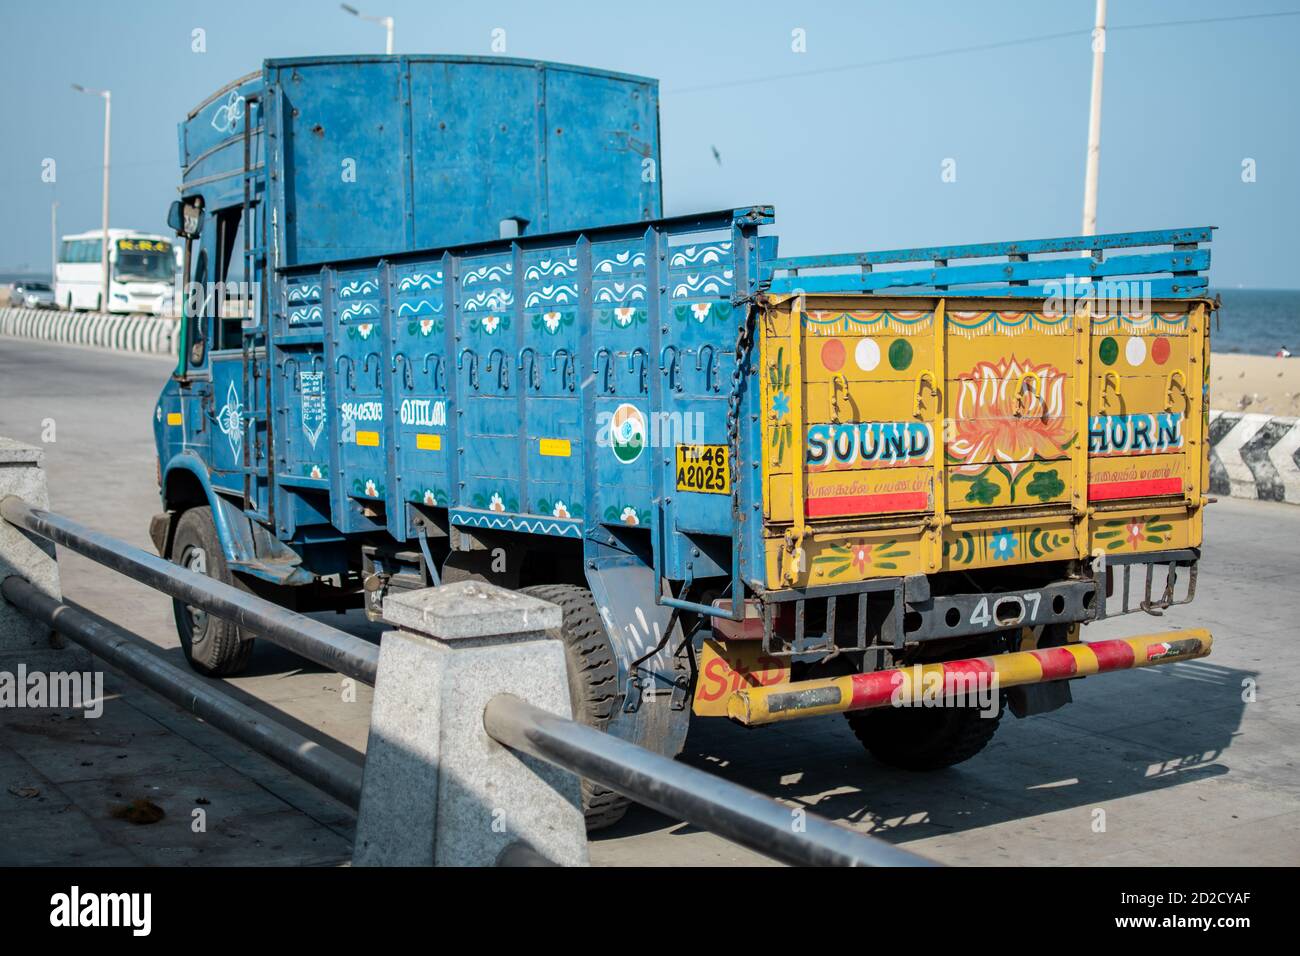 Chennai, India - 8 febbraio 2020: Un camion colorato blu e giallo parcheggiato presso la spiaggia l'8 febbraio 2020 a Chennai, India Foto Stock